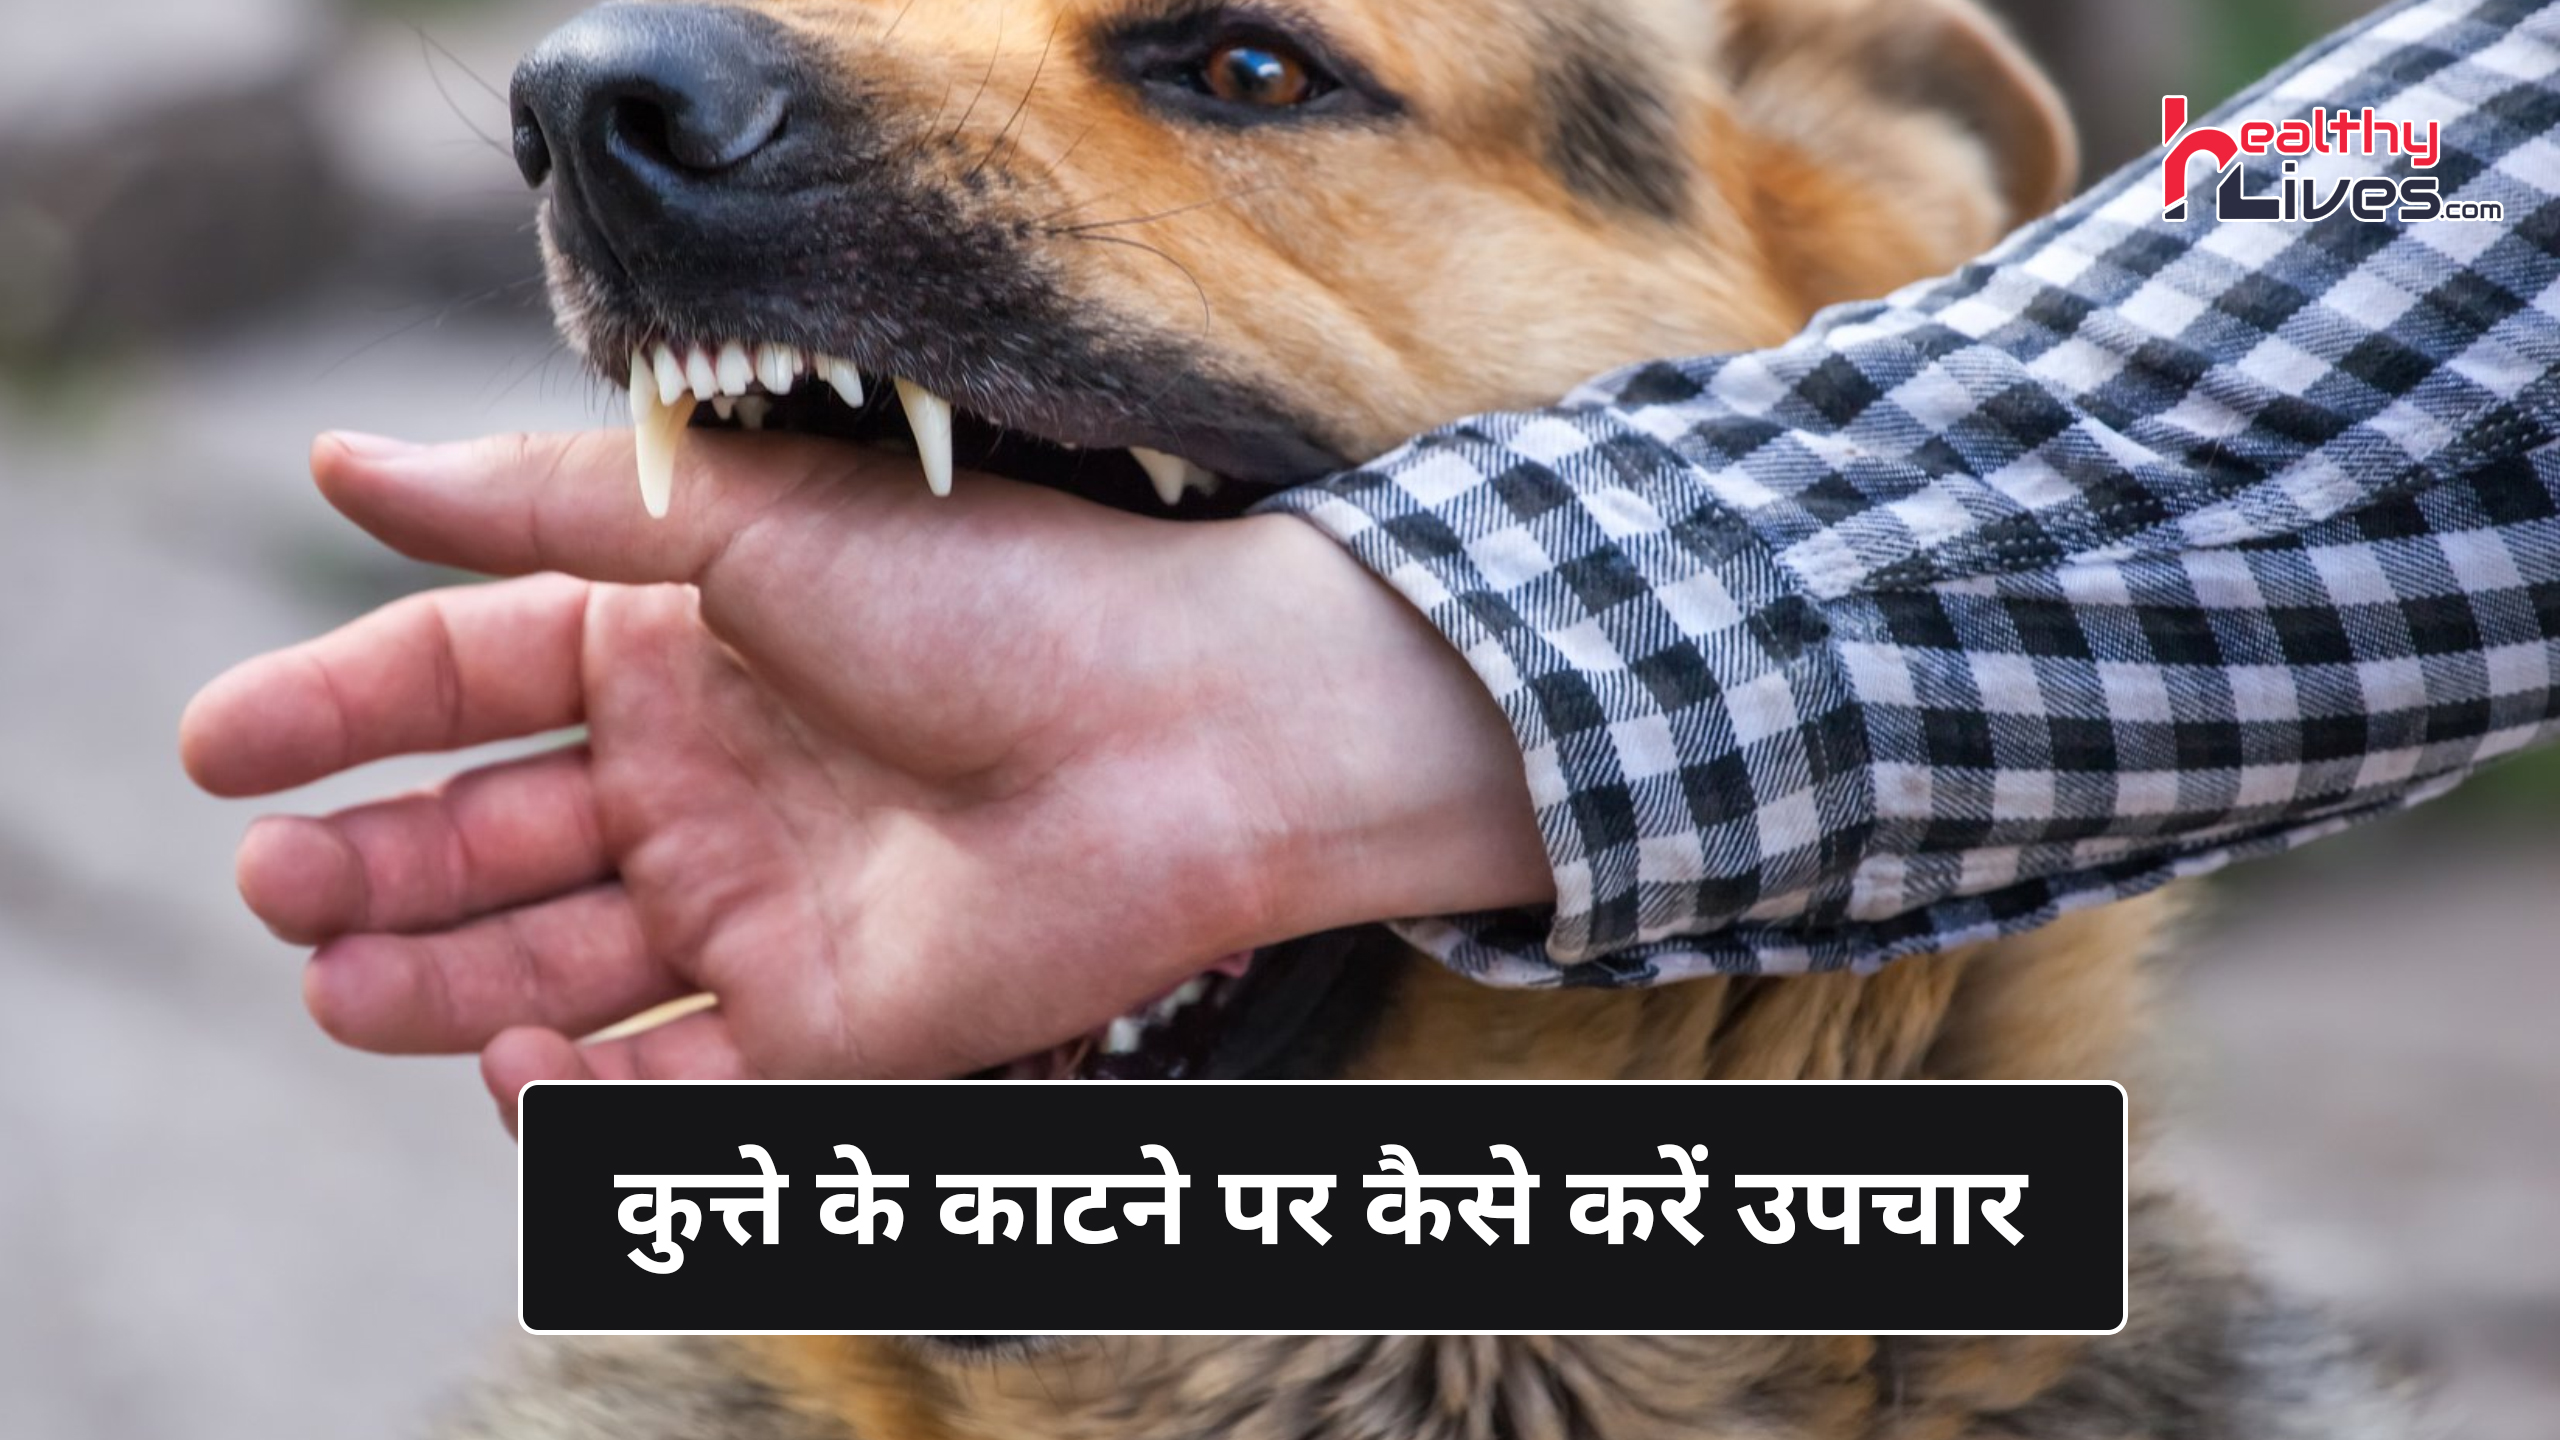 Dog Bite Treatment in Hindi: कुत्तों के काटने से होने वाली बीमारी रेबीज का इलाज